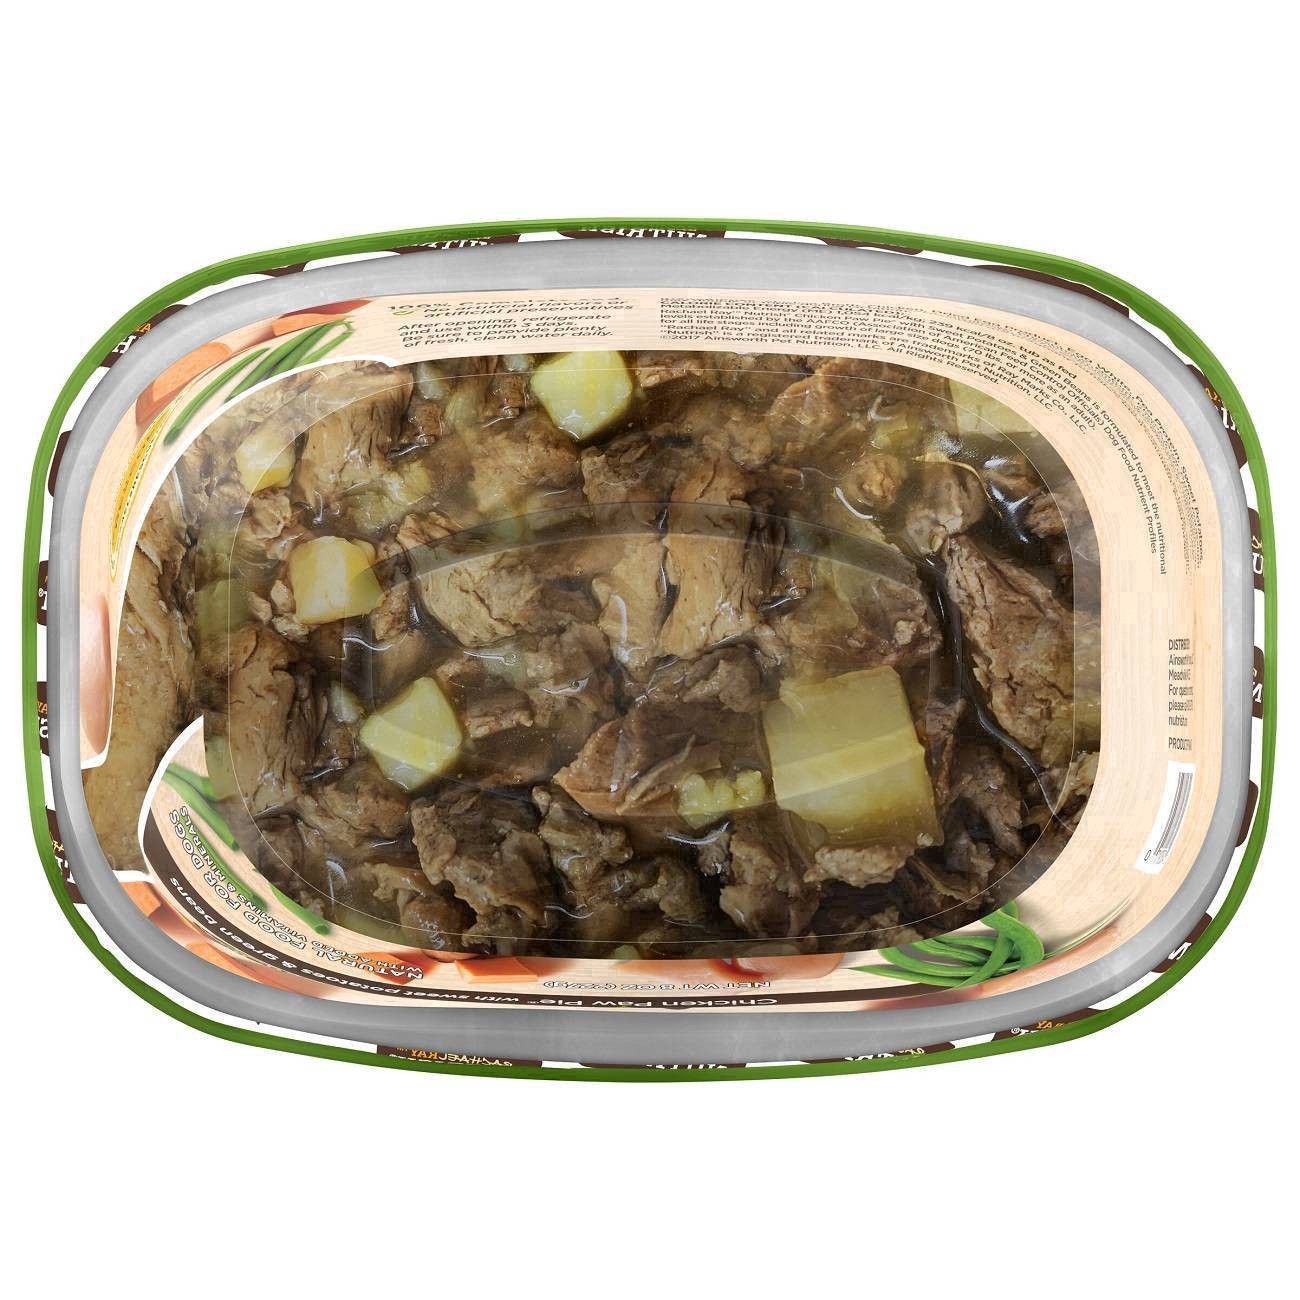 slide 18 of 106, Rachael Ray Nutrish Savory Lamb Stew Wet Dog Food, 8 oz. Tub, 8 oz